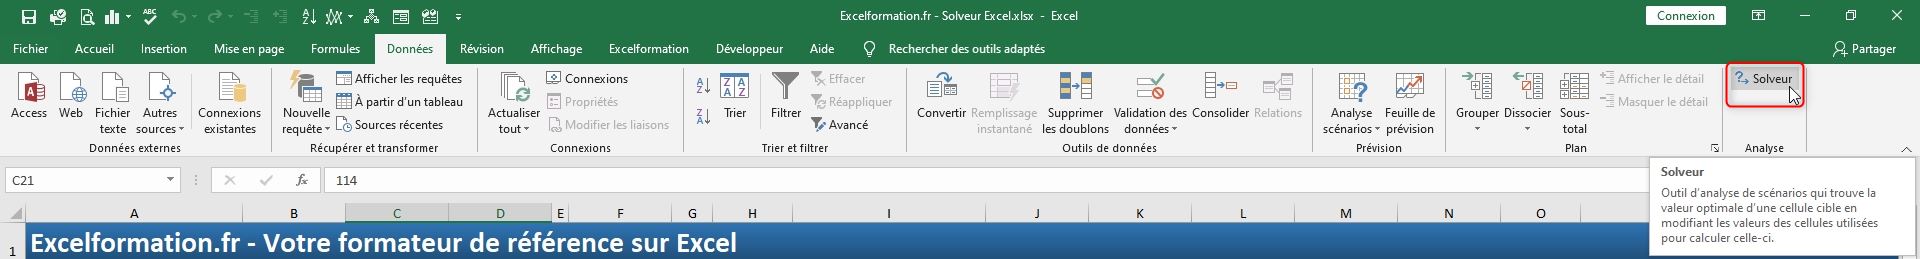 Excel formation - solveur excel - 04